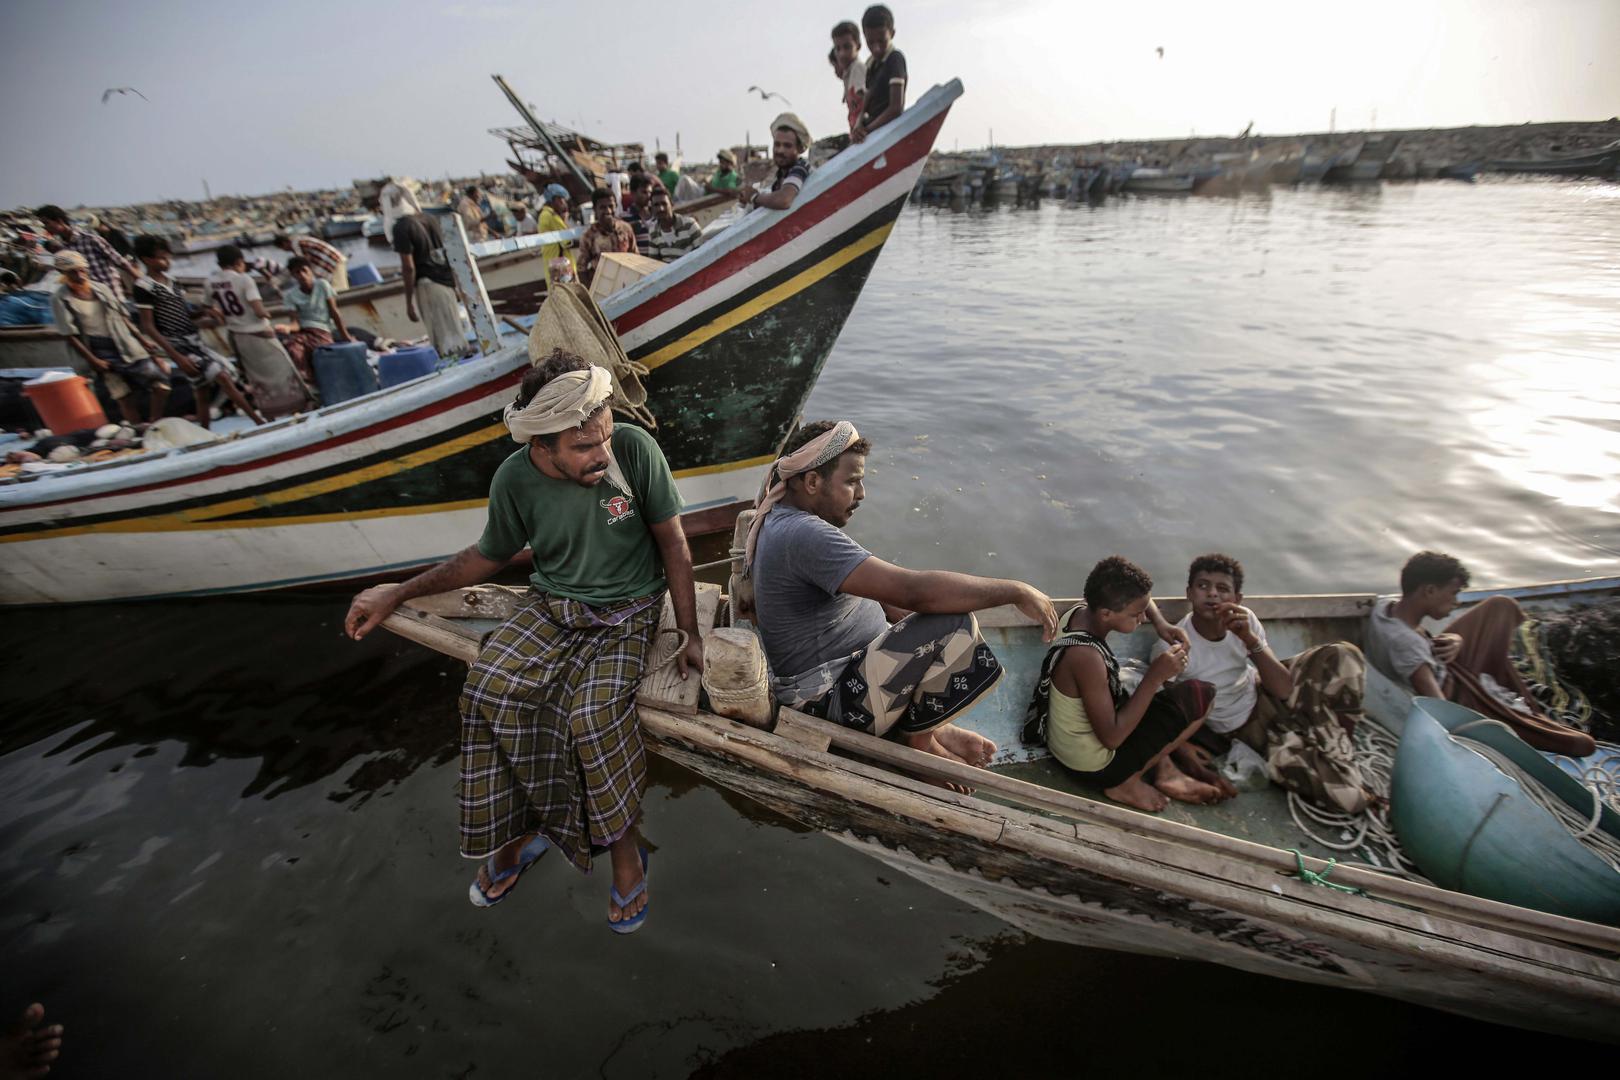 صيادو أسماك يستريحون على مراكبهم في الحديدة، اليمن، قبل التوجه إلى البحر. منذ 2018، هاجمت القوات البحرية بقيادة السعودية مراكب صيد في البحر الأحمر، فقتلت على الأقل 47 صيادا يمنيا. 